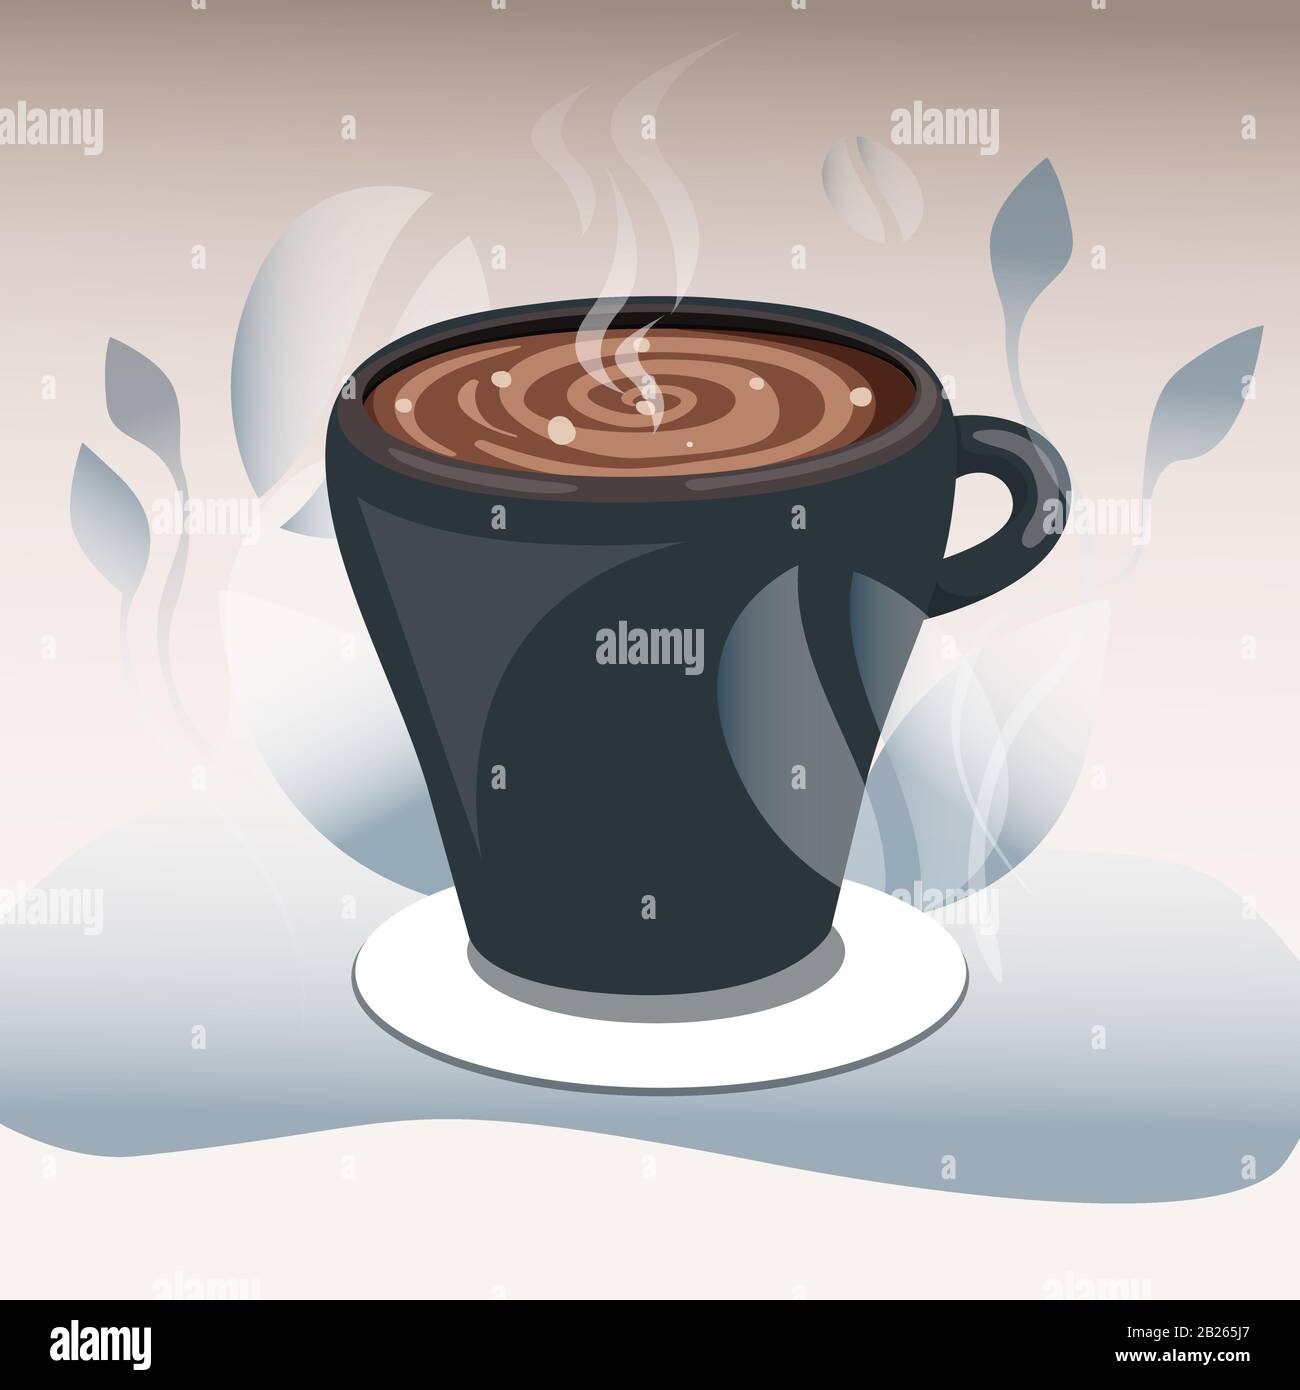 Tasse Kaffee oder heiße Schokolade, Cartoon-Illustration. Heiße Schokolade zum Frühstück, Cappuccino und Espresso zum Morgengetränk, Becher mit heißem Beverag Stock Vektor